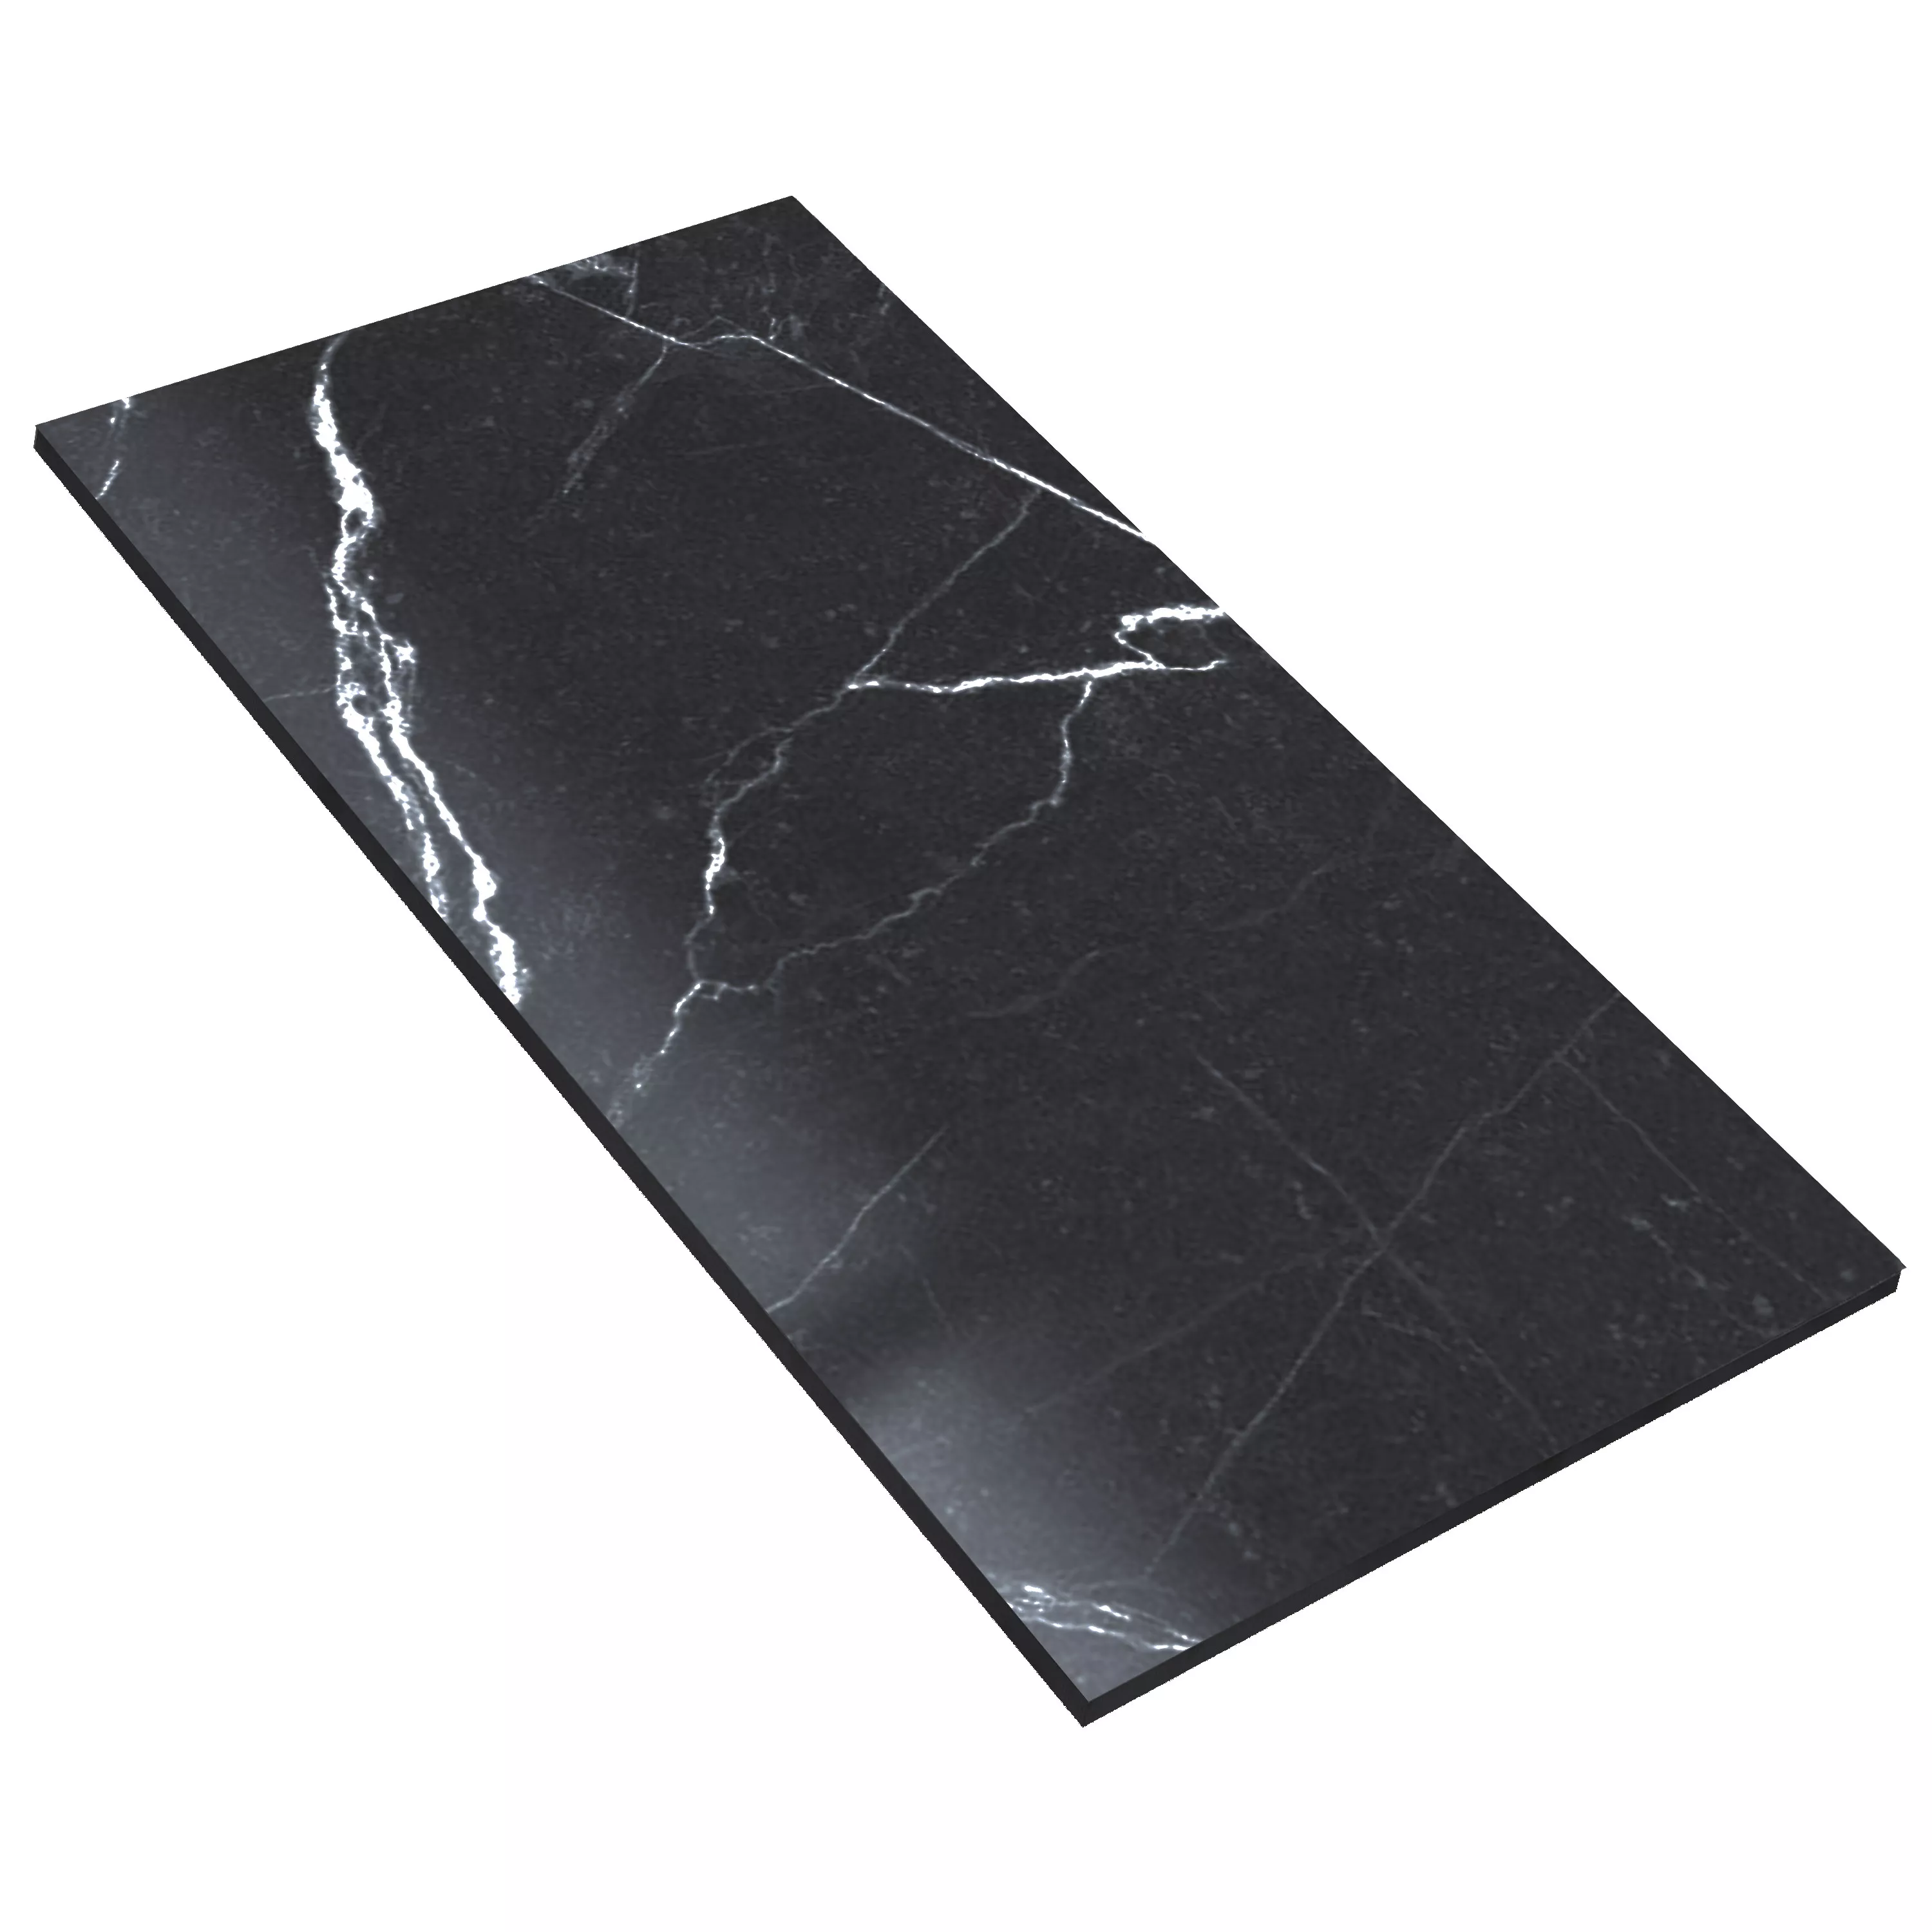 Πλακάκια Δαπέδου Santana Μαρμάρινη Όψη Αμεμπτος Ανθρακίτης 60x120cm